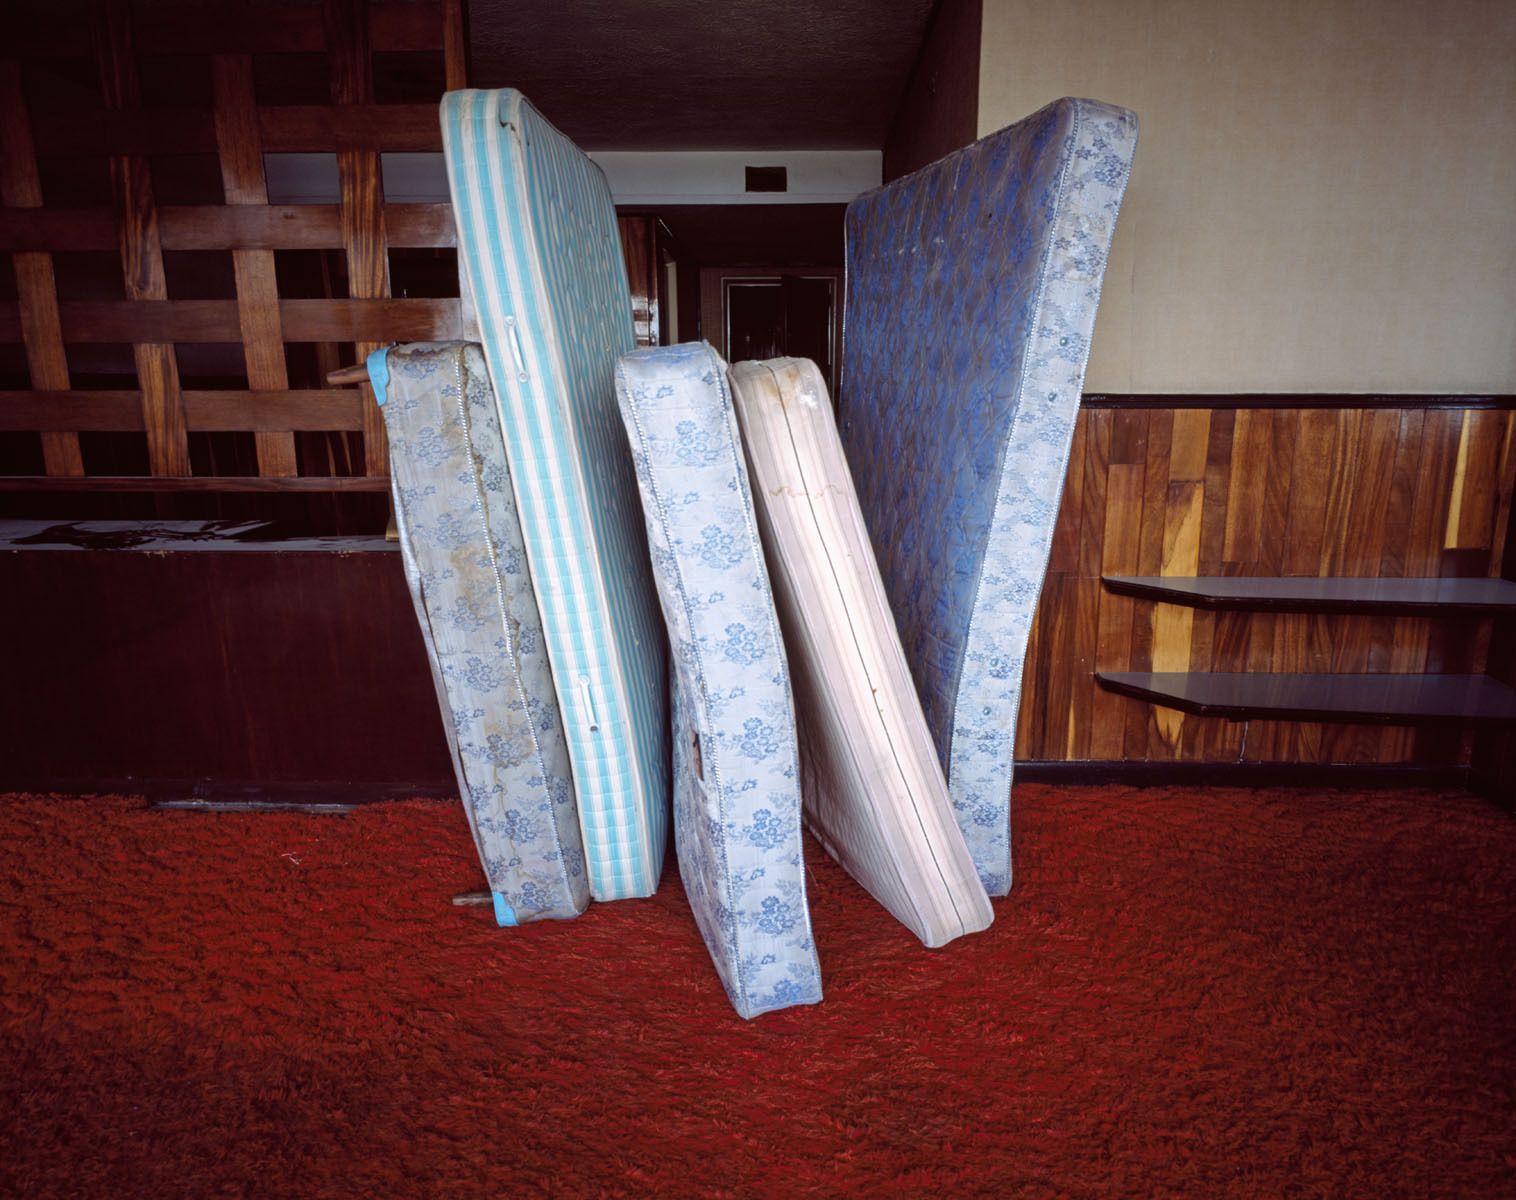 Beds, 2006